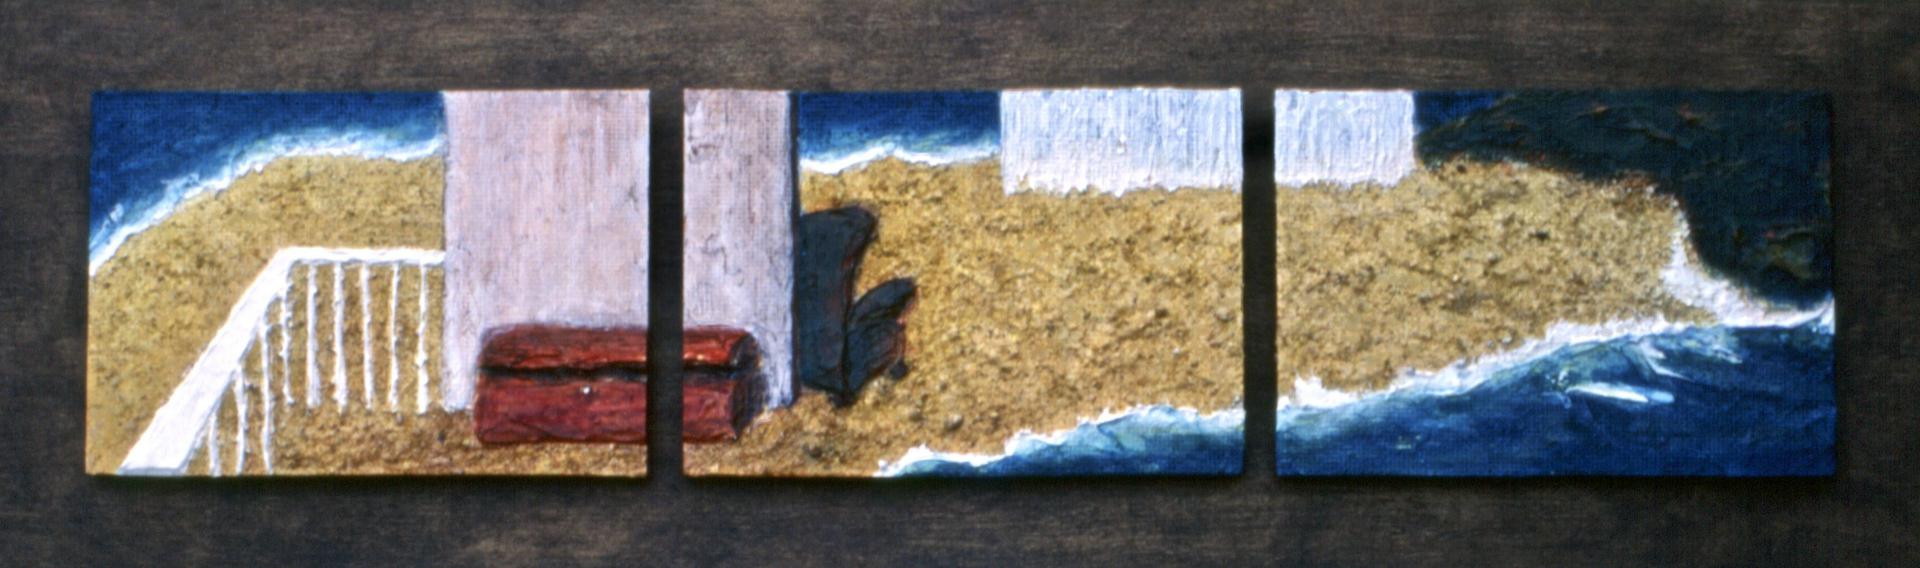 Al escondite / À cahe-cache - technique mixte sur bois, 1998